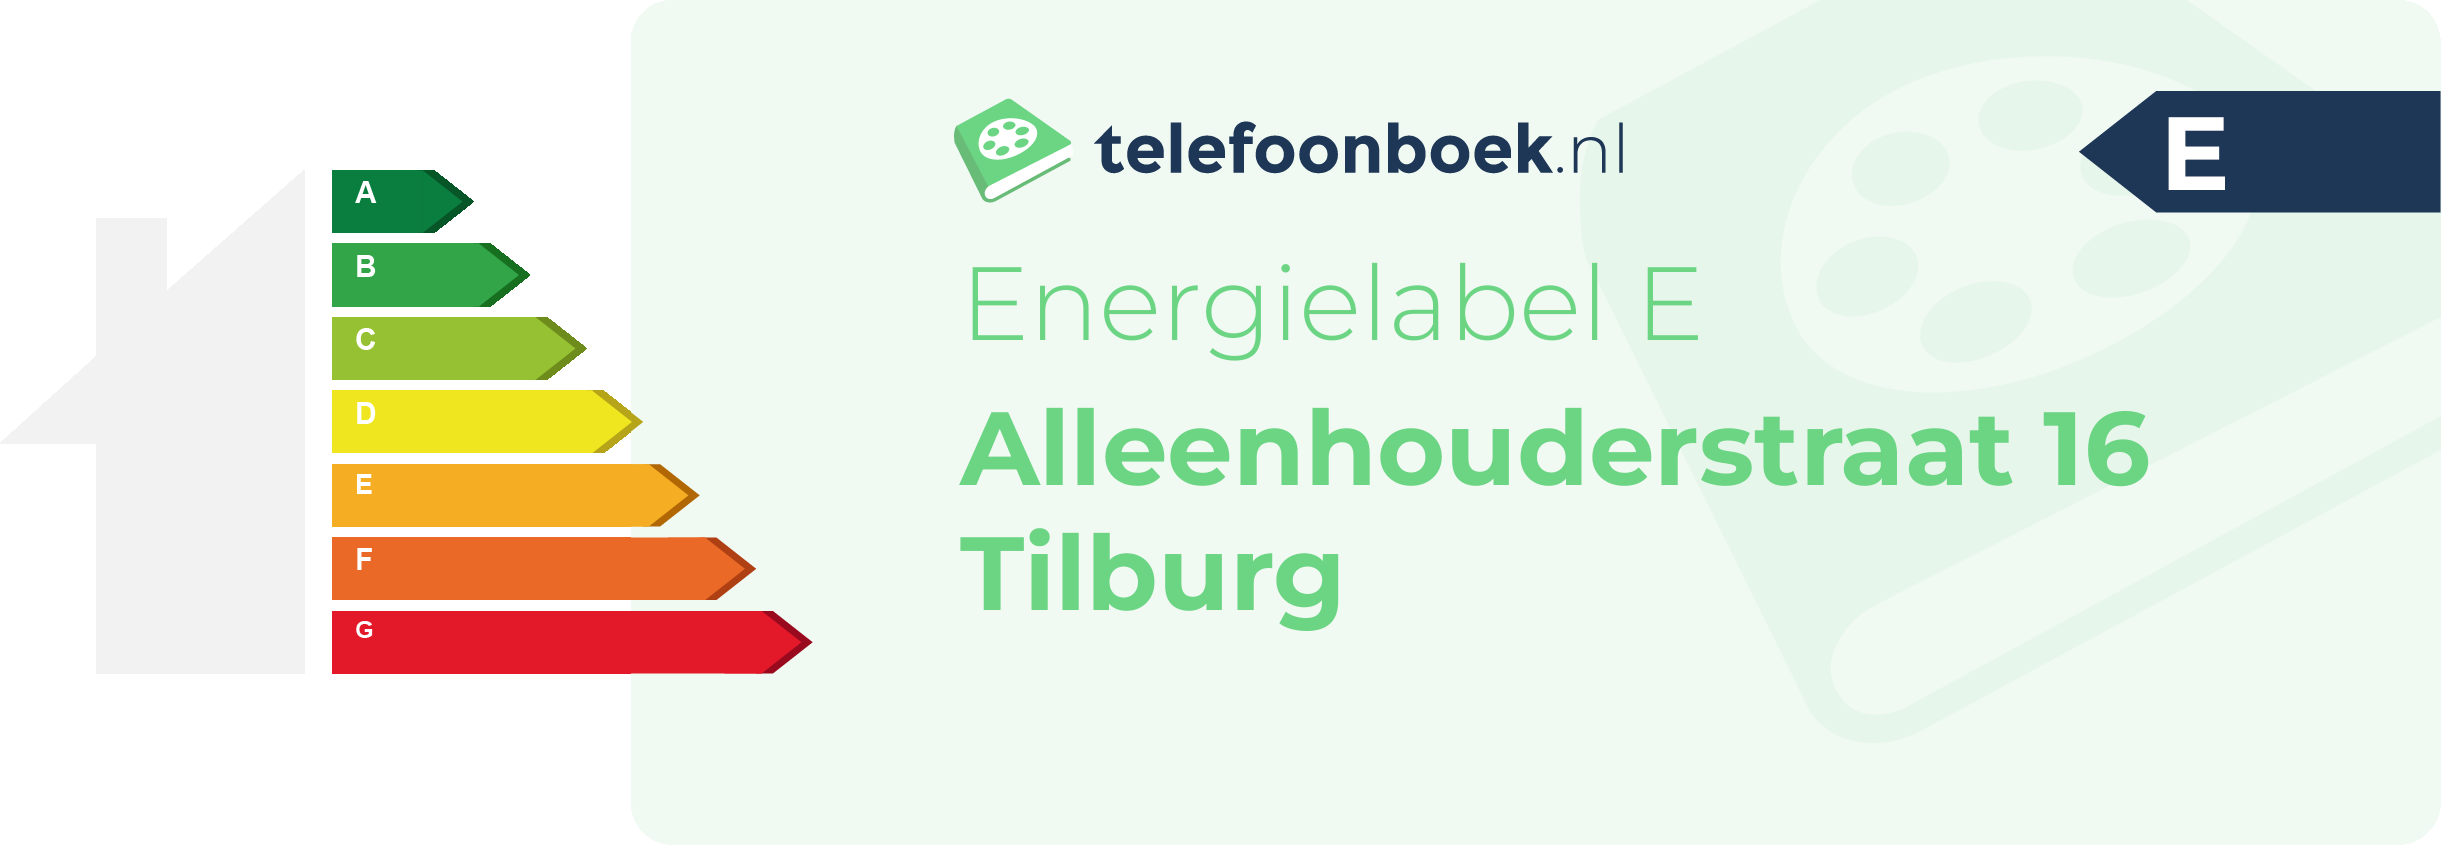 Energielabel Alleenhouderstraat 16 Tilburg